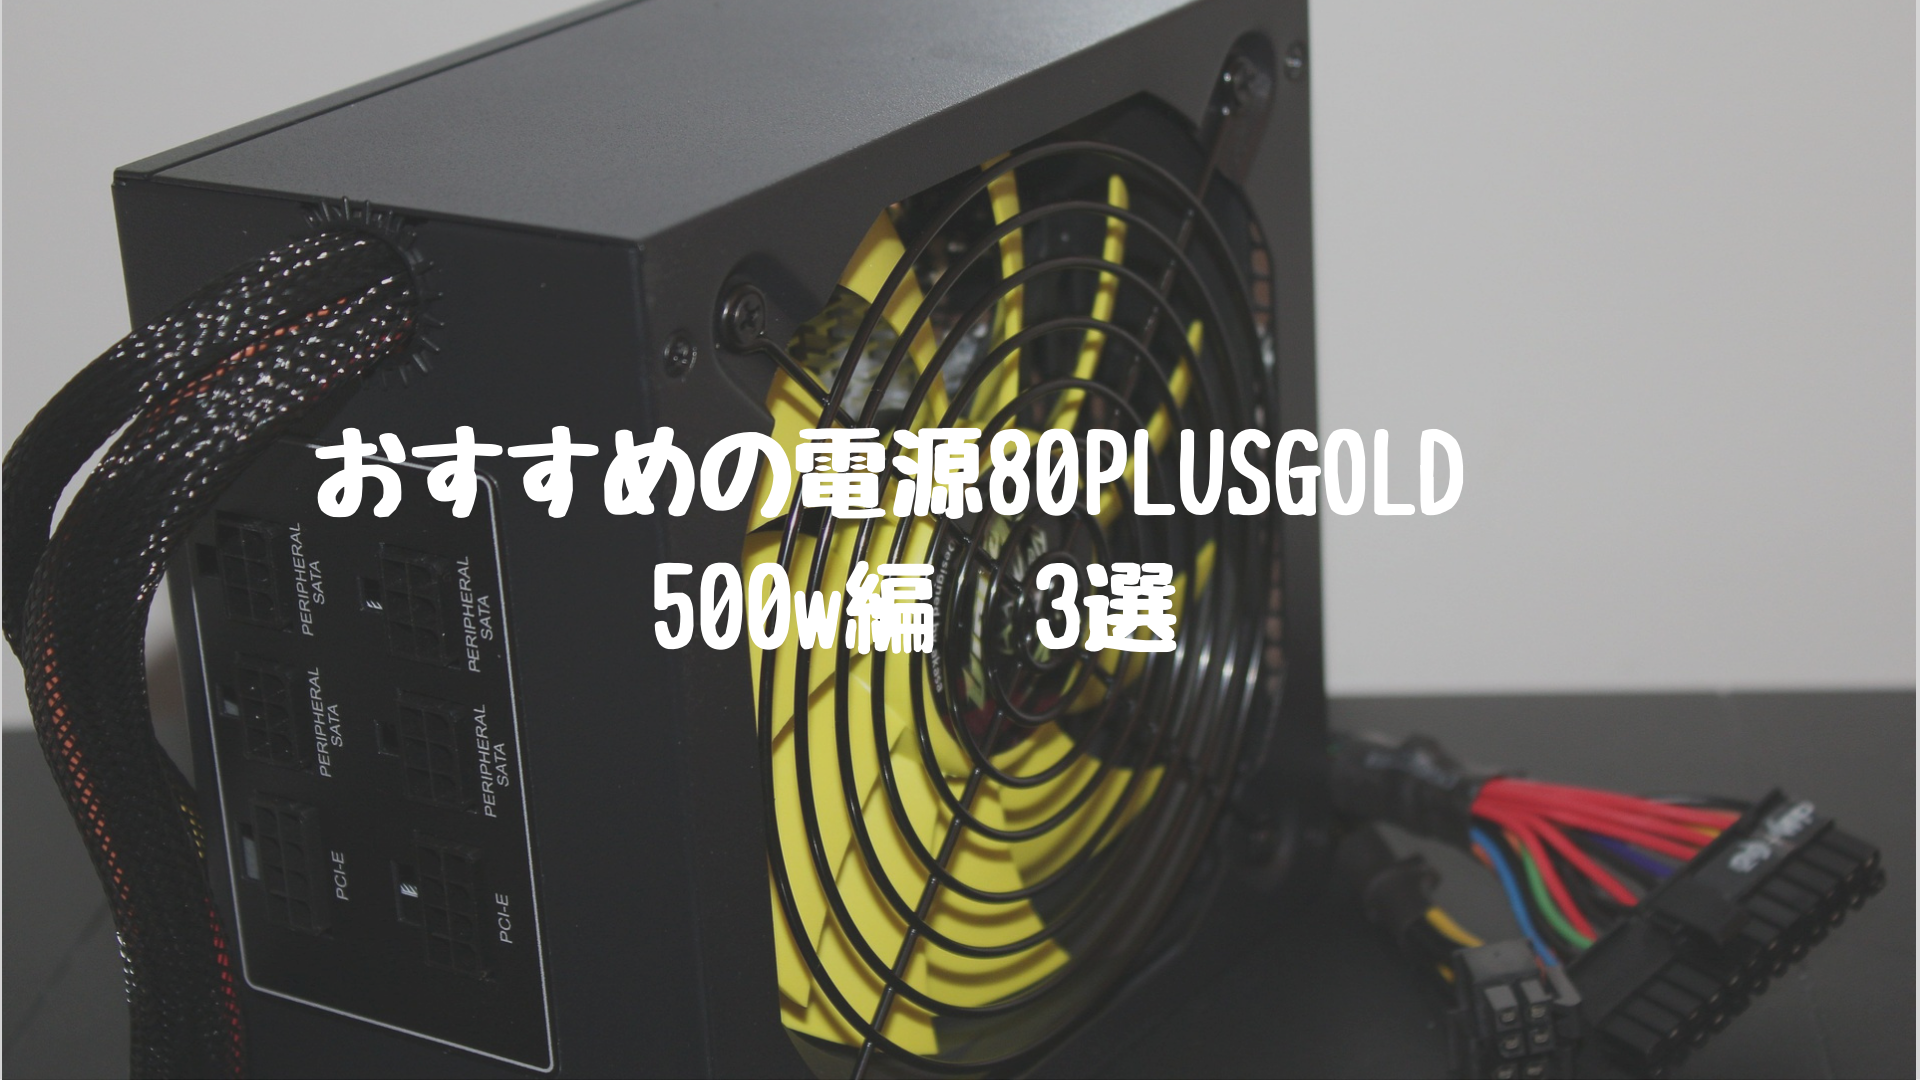 コストパフォーマンス優秀かつ80plusgold認証のおすすめ電源3選 500w編 自作パソコンのすすめ